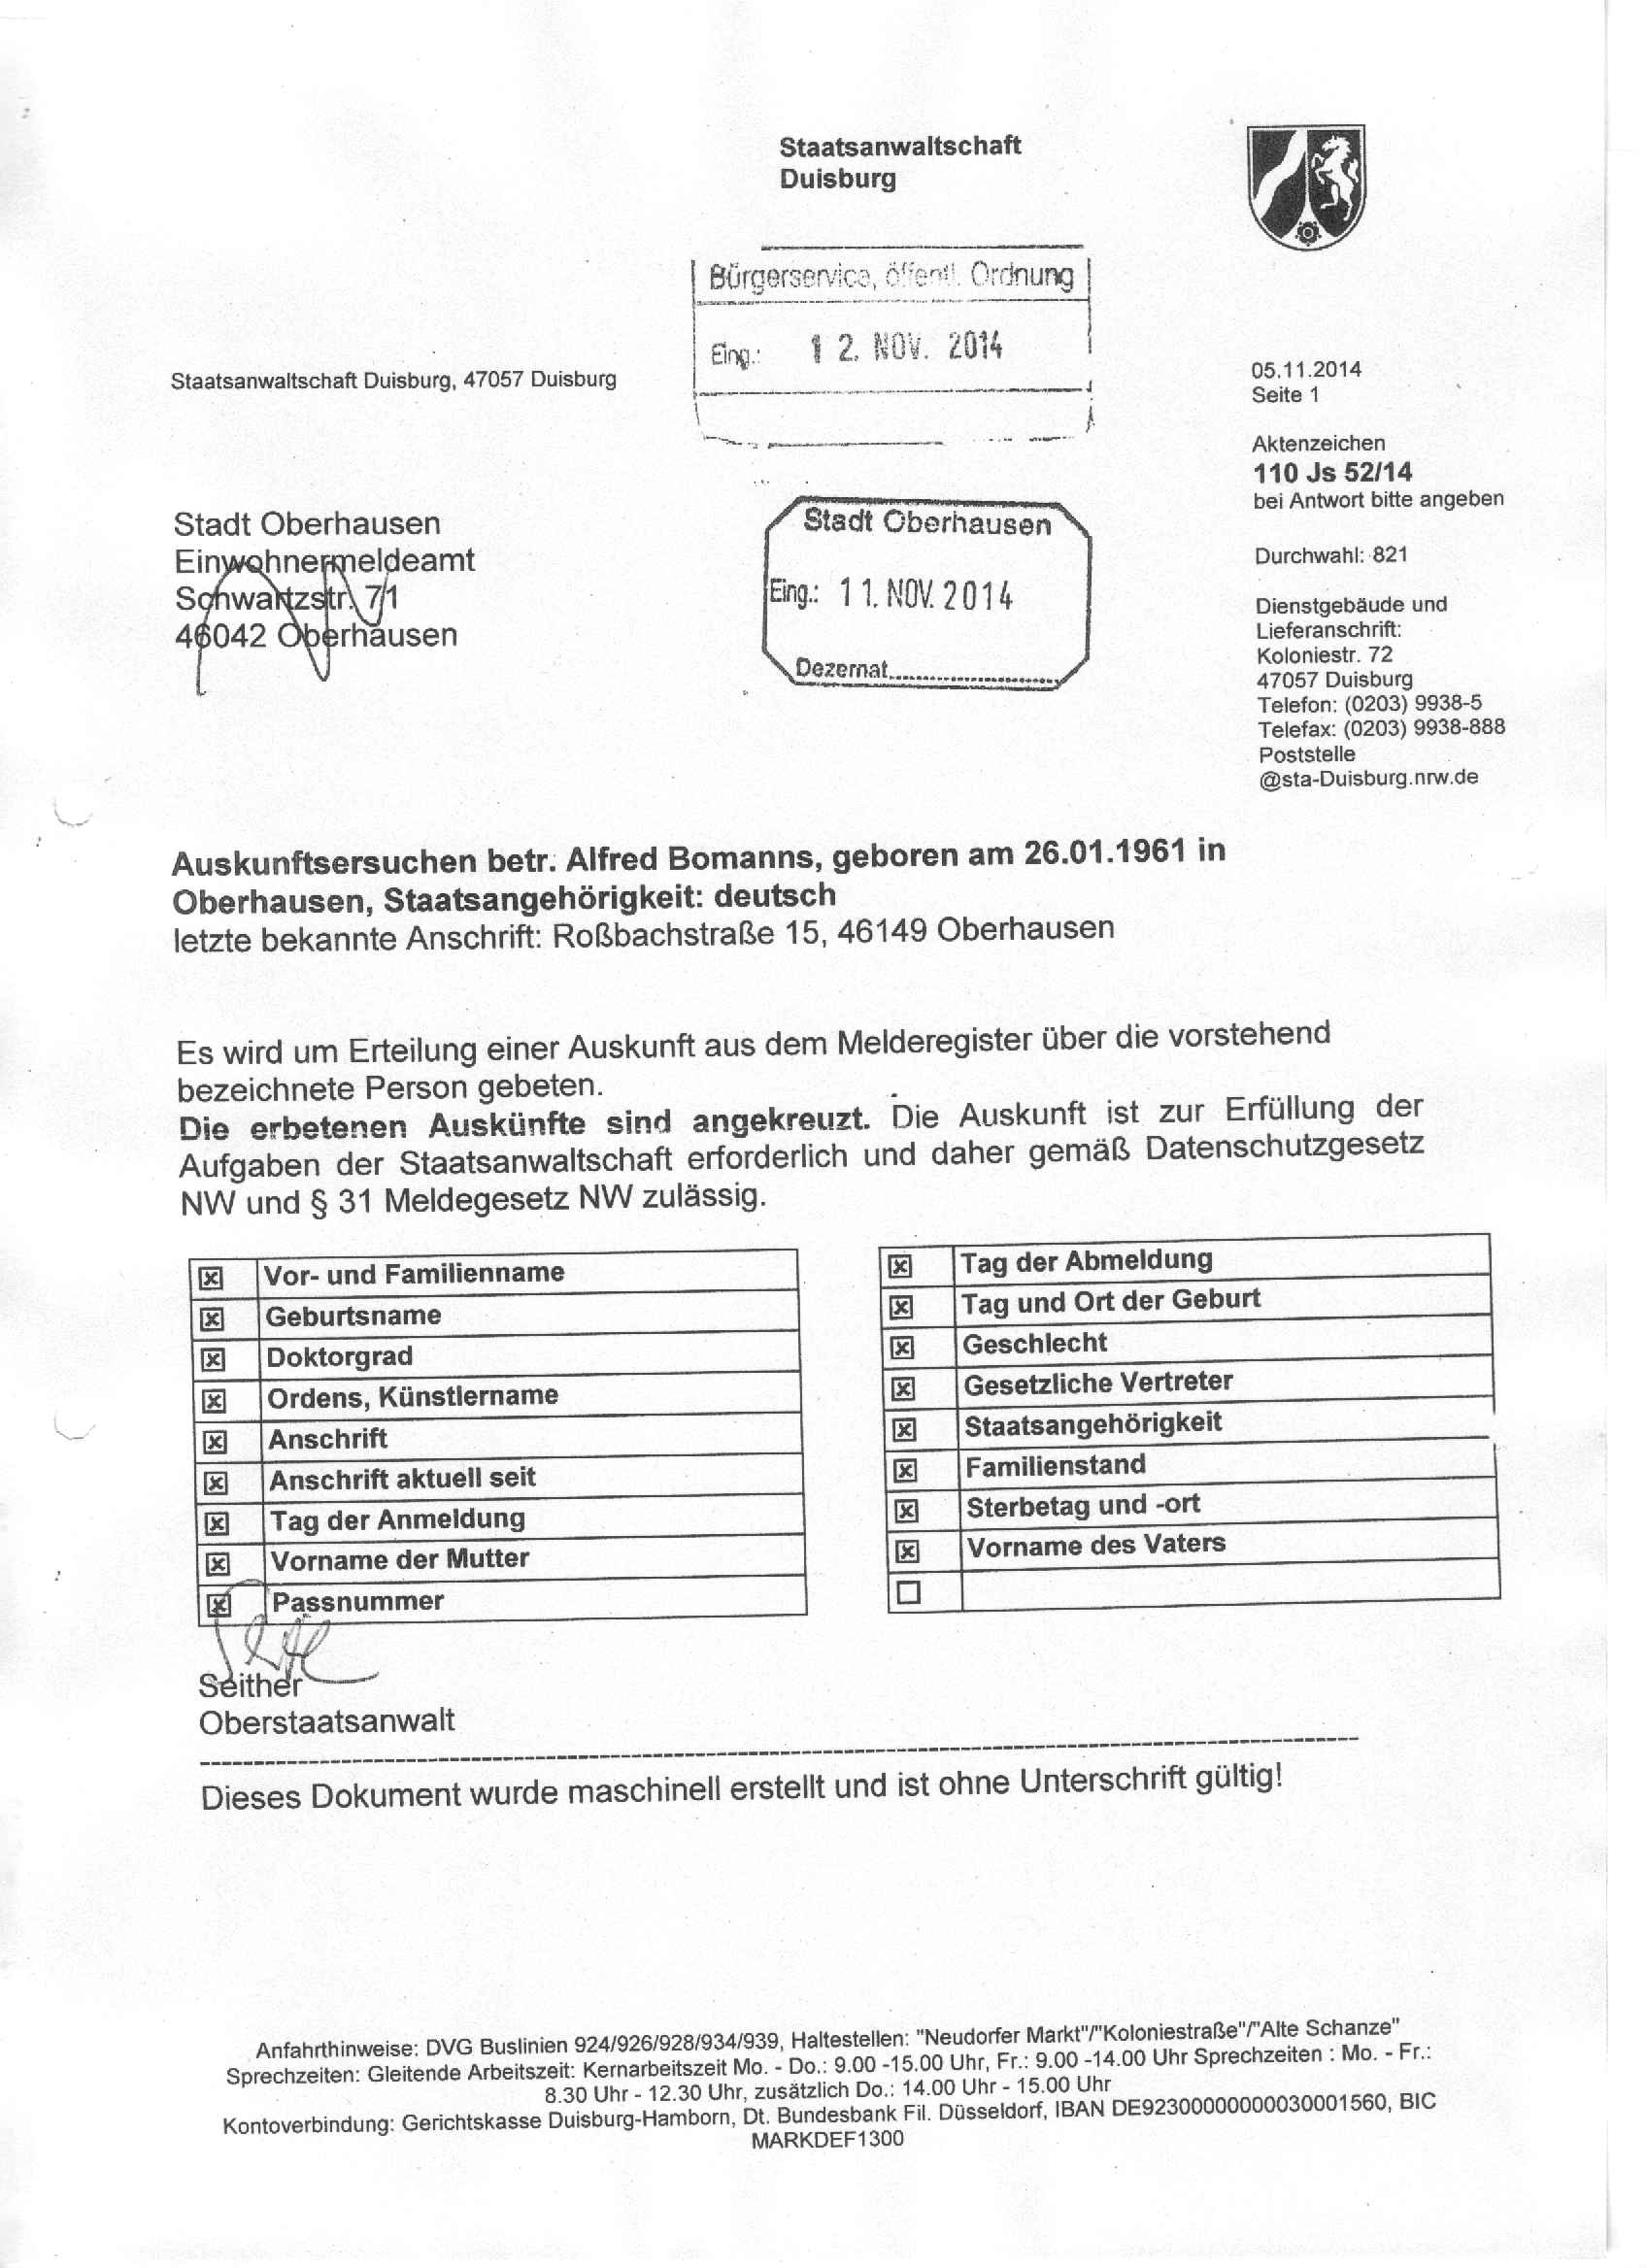 Auskunftsersuchen des Oberstaatsanwaltes Wolfgang Seither an das Einwohnermeldeamt in Oberhausen vom 05.11.2014